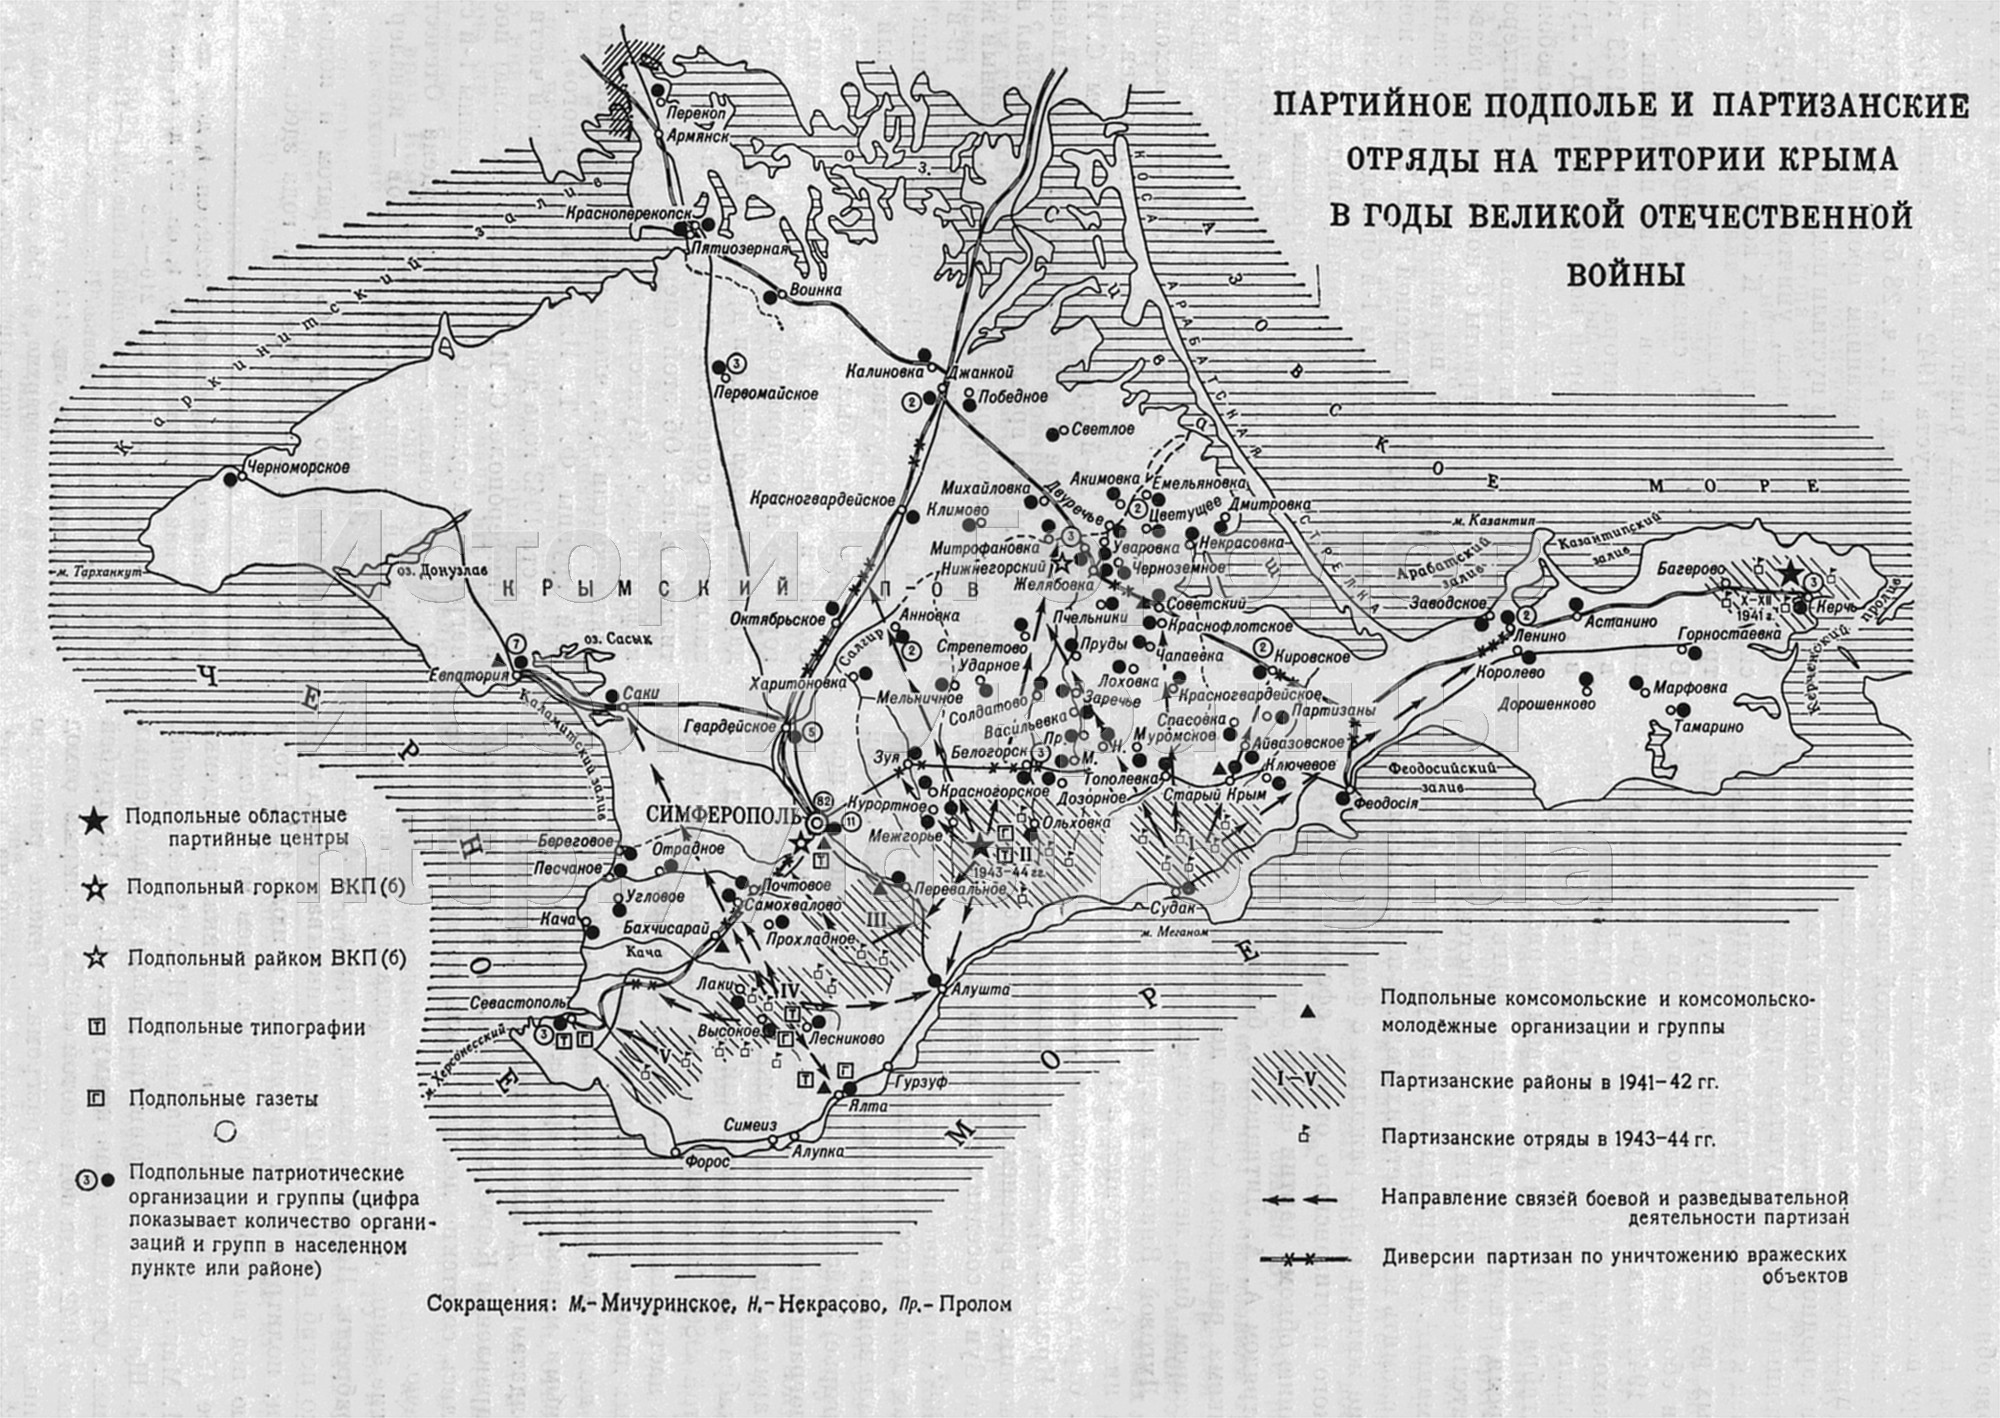 Партийное подполье и партизанские отряды на территории Крыма в годы Великой Отечественной войны